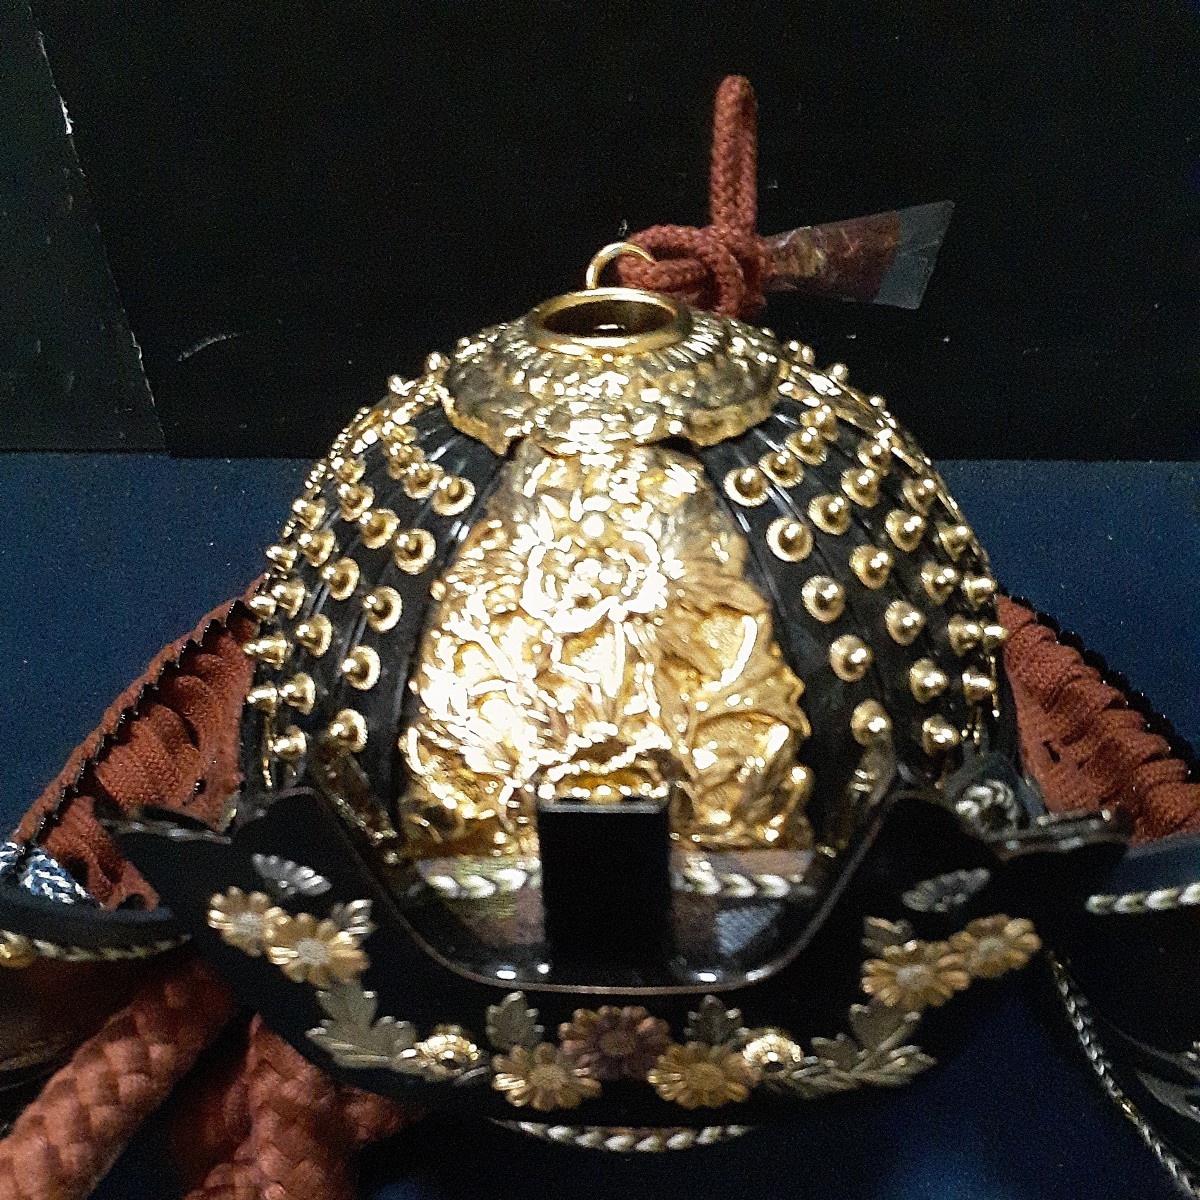  шлем украшение Edo доспехи традиция прикладное искусство край .. .. ширина примерный 37cm высота примерно 16cm глубина примерно 23cm тяпка форма передний украшение нет 